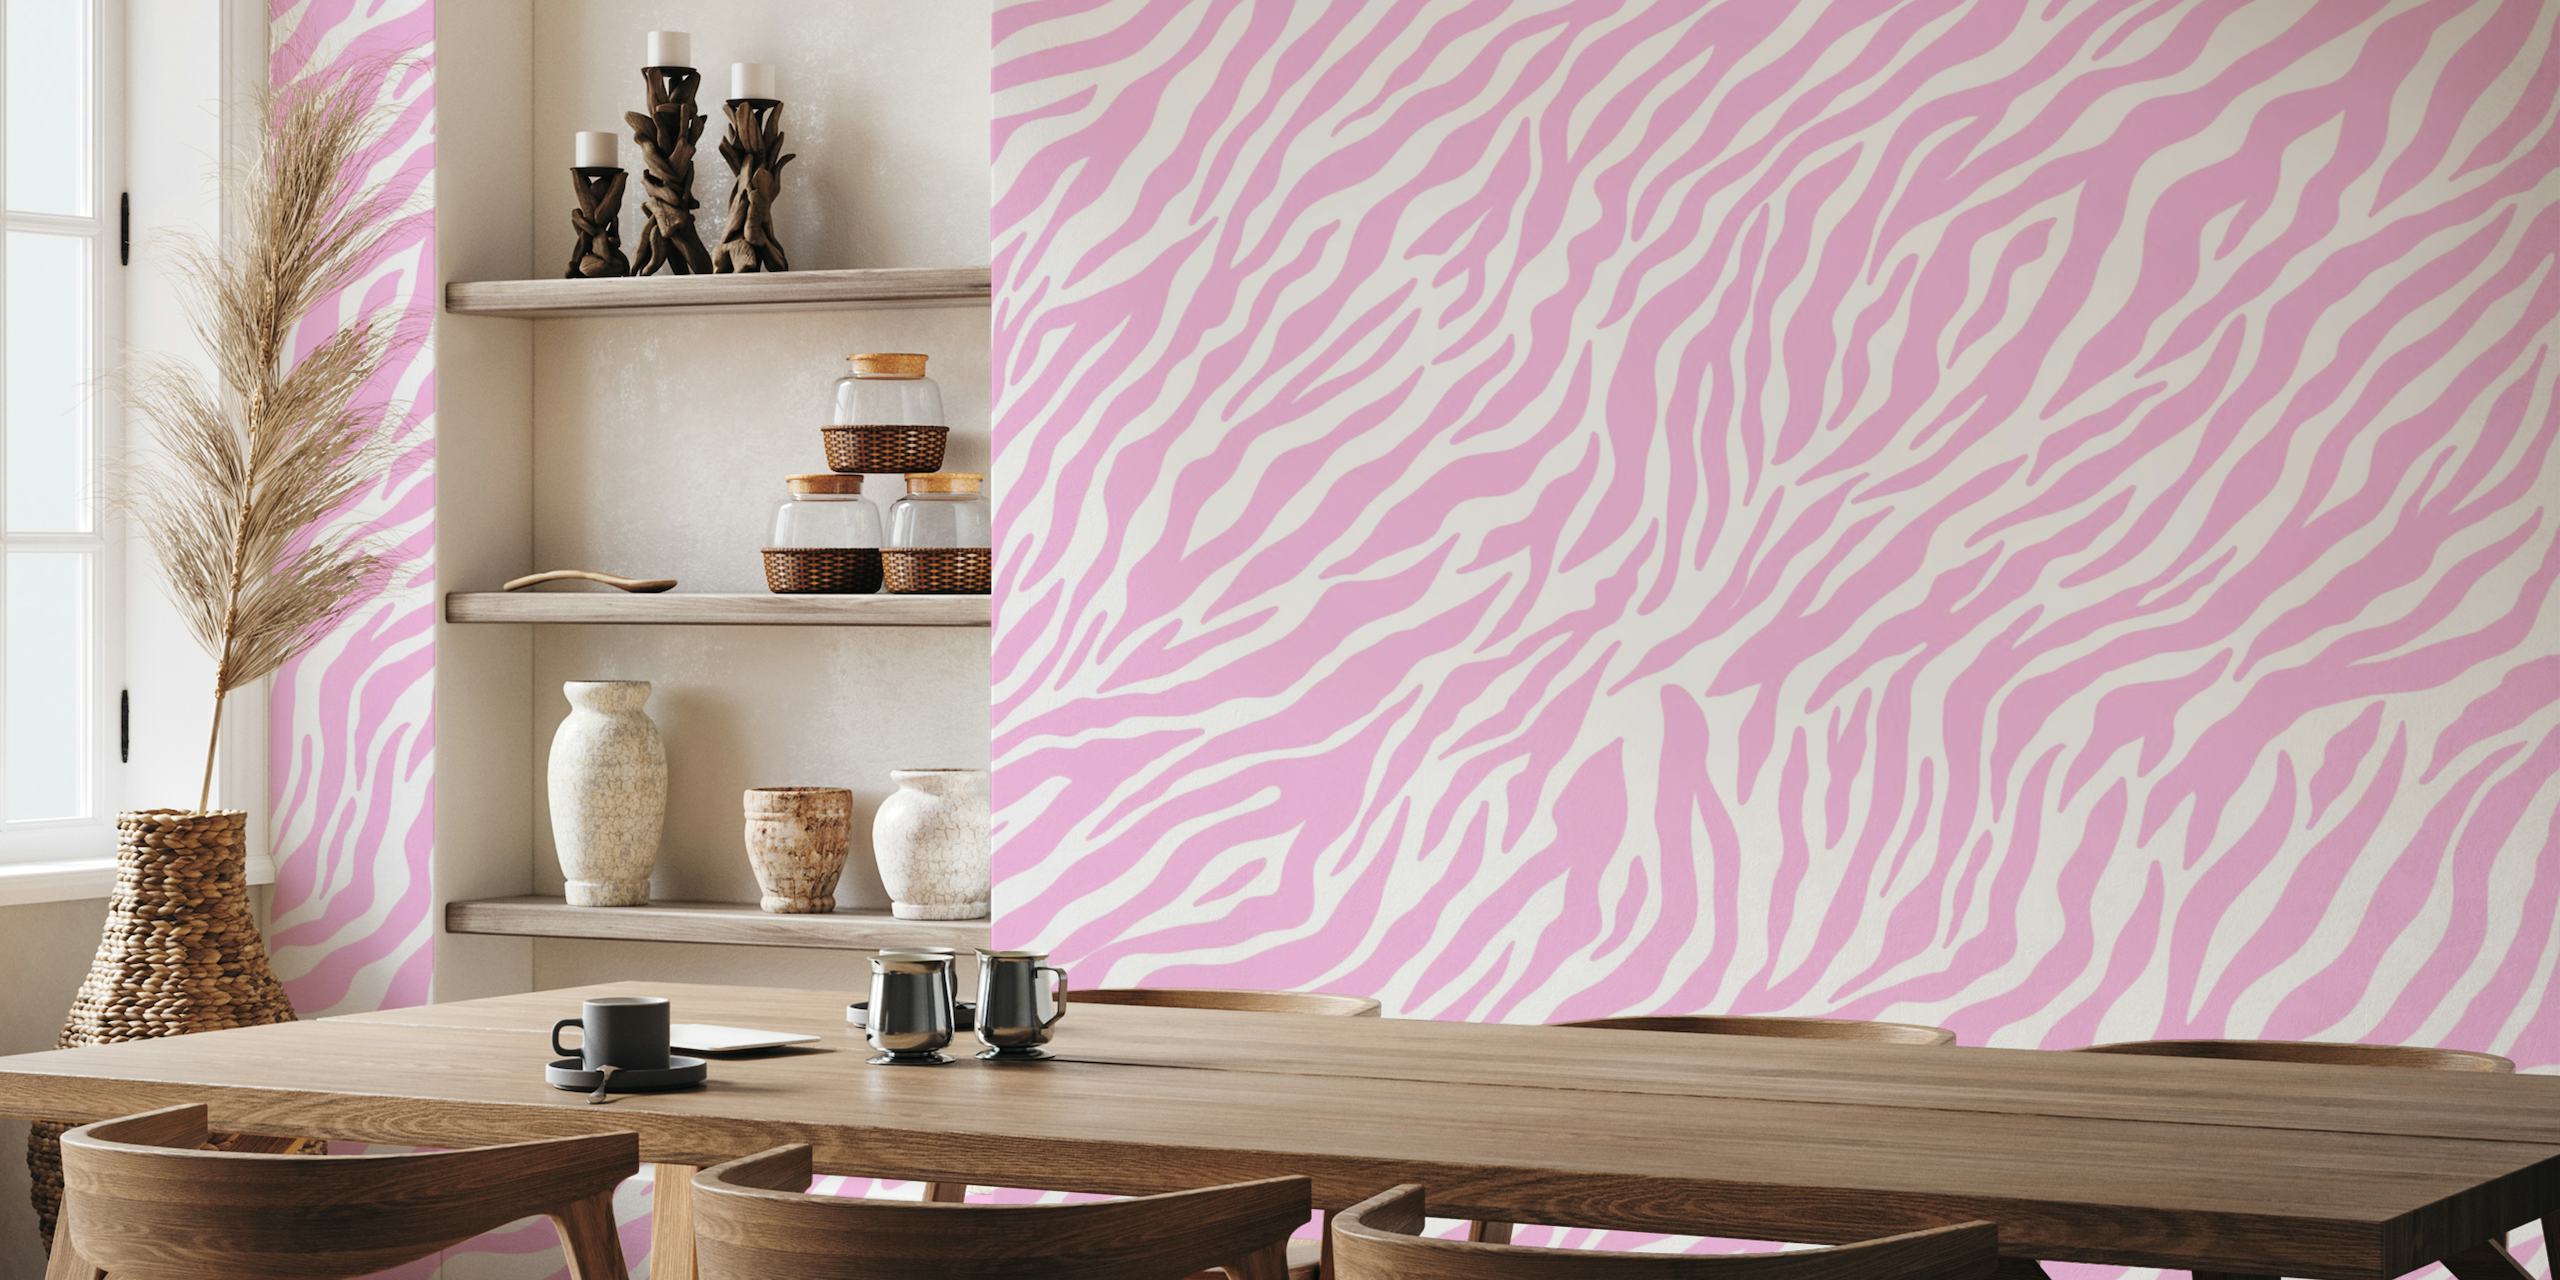 Pastel Pink Zebra Stripes papel pintado